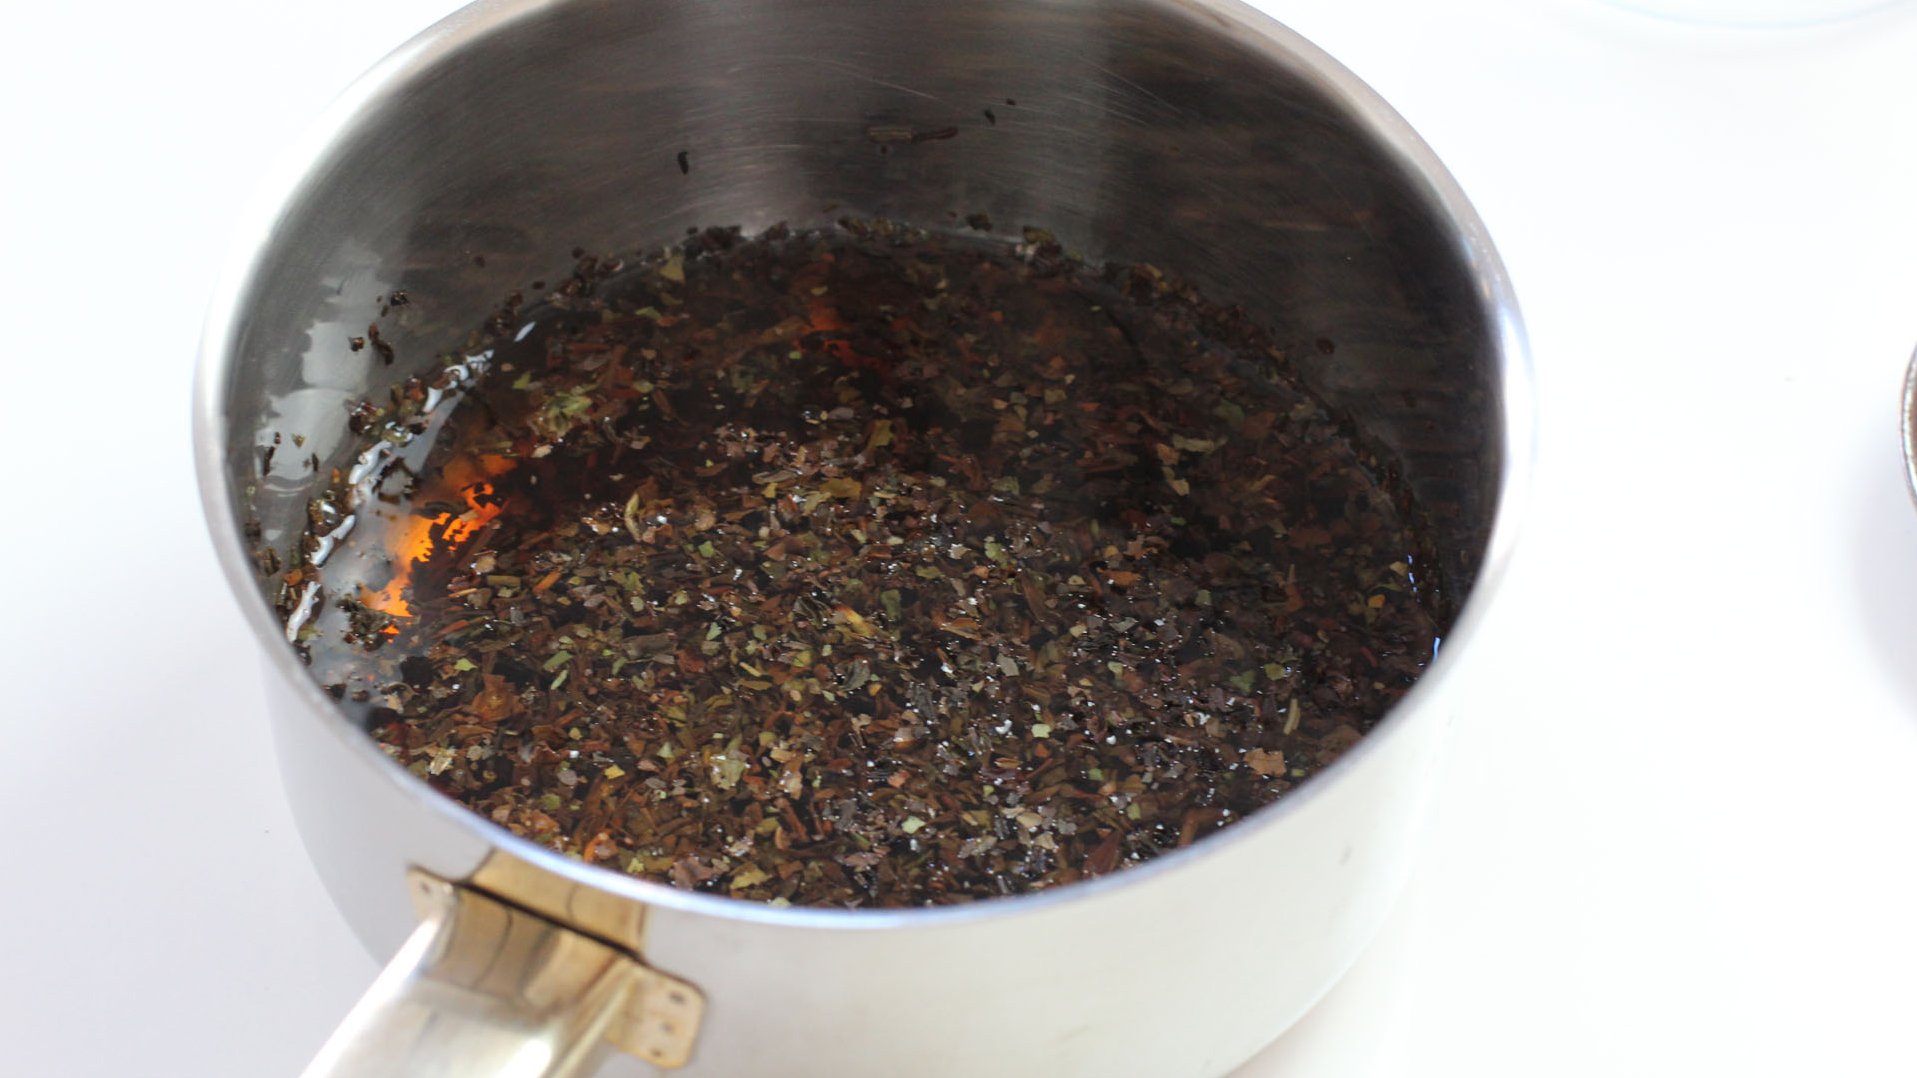 300 ml Wasser zum Kochen bringen. Tee ins heiße Wasser geben und etwa 15 Minuten ziehen lassen. Tee anschließend mit einem Sieb entfernen.